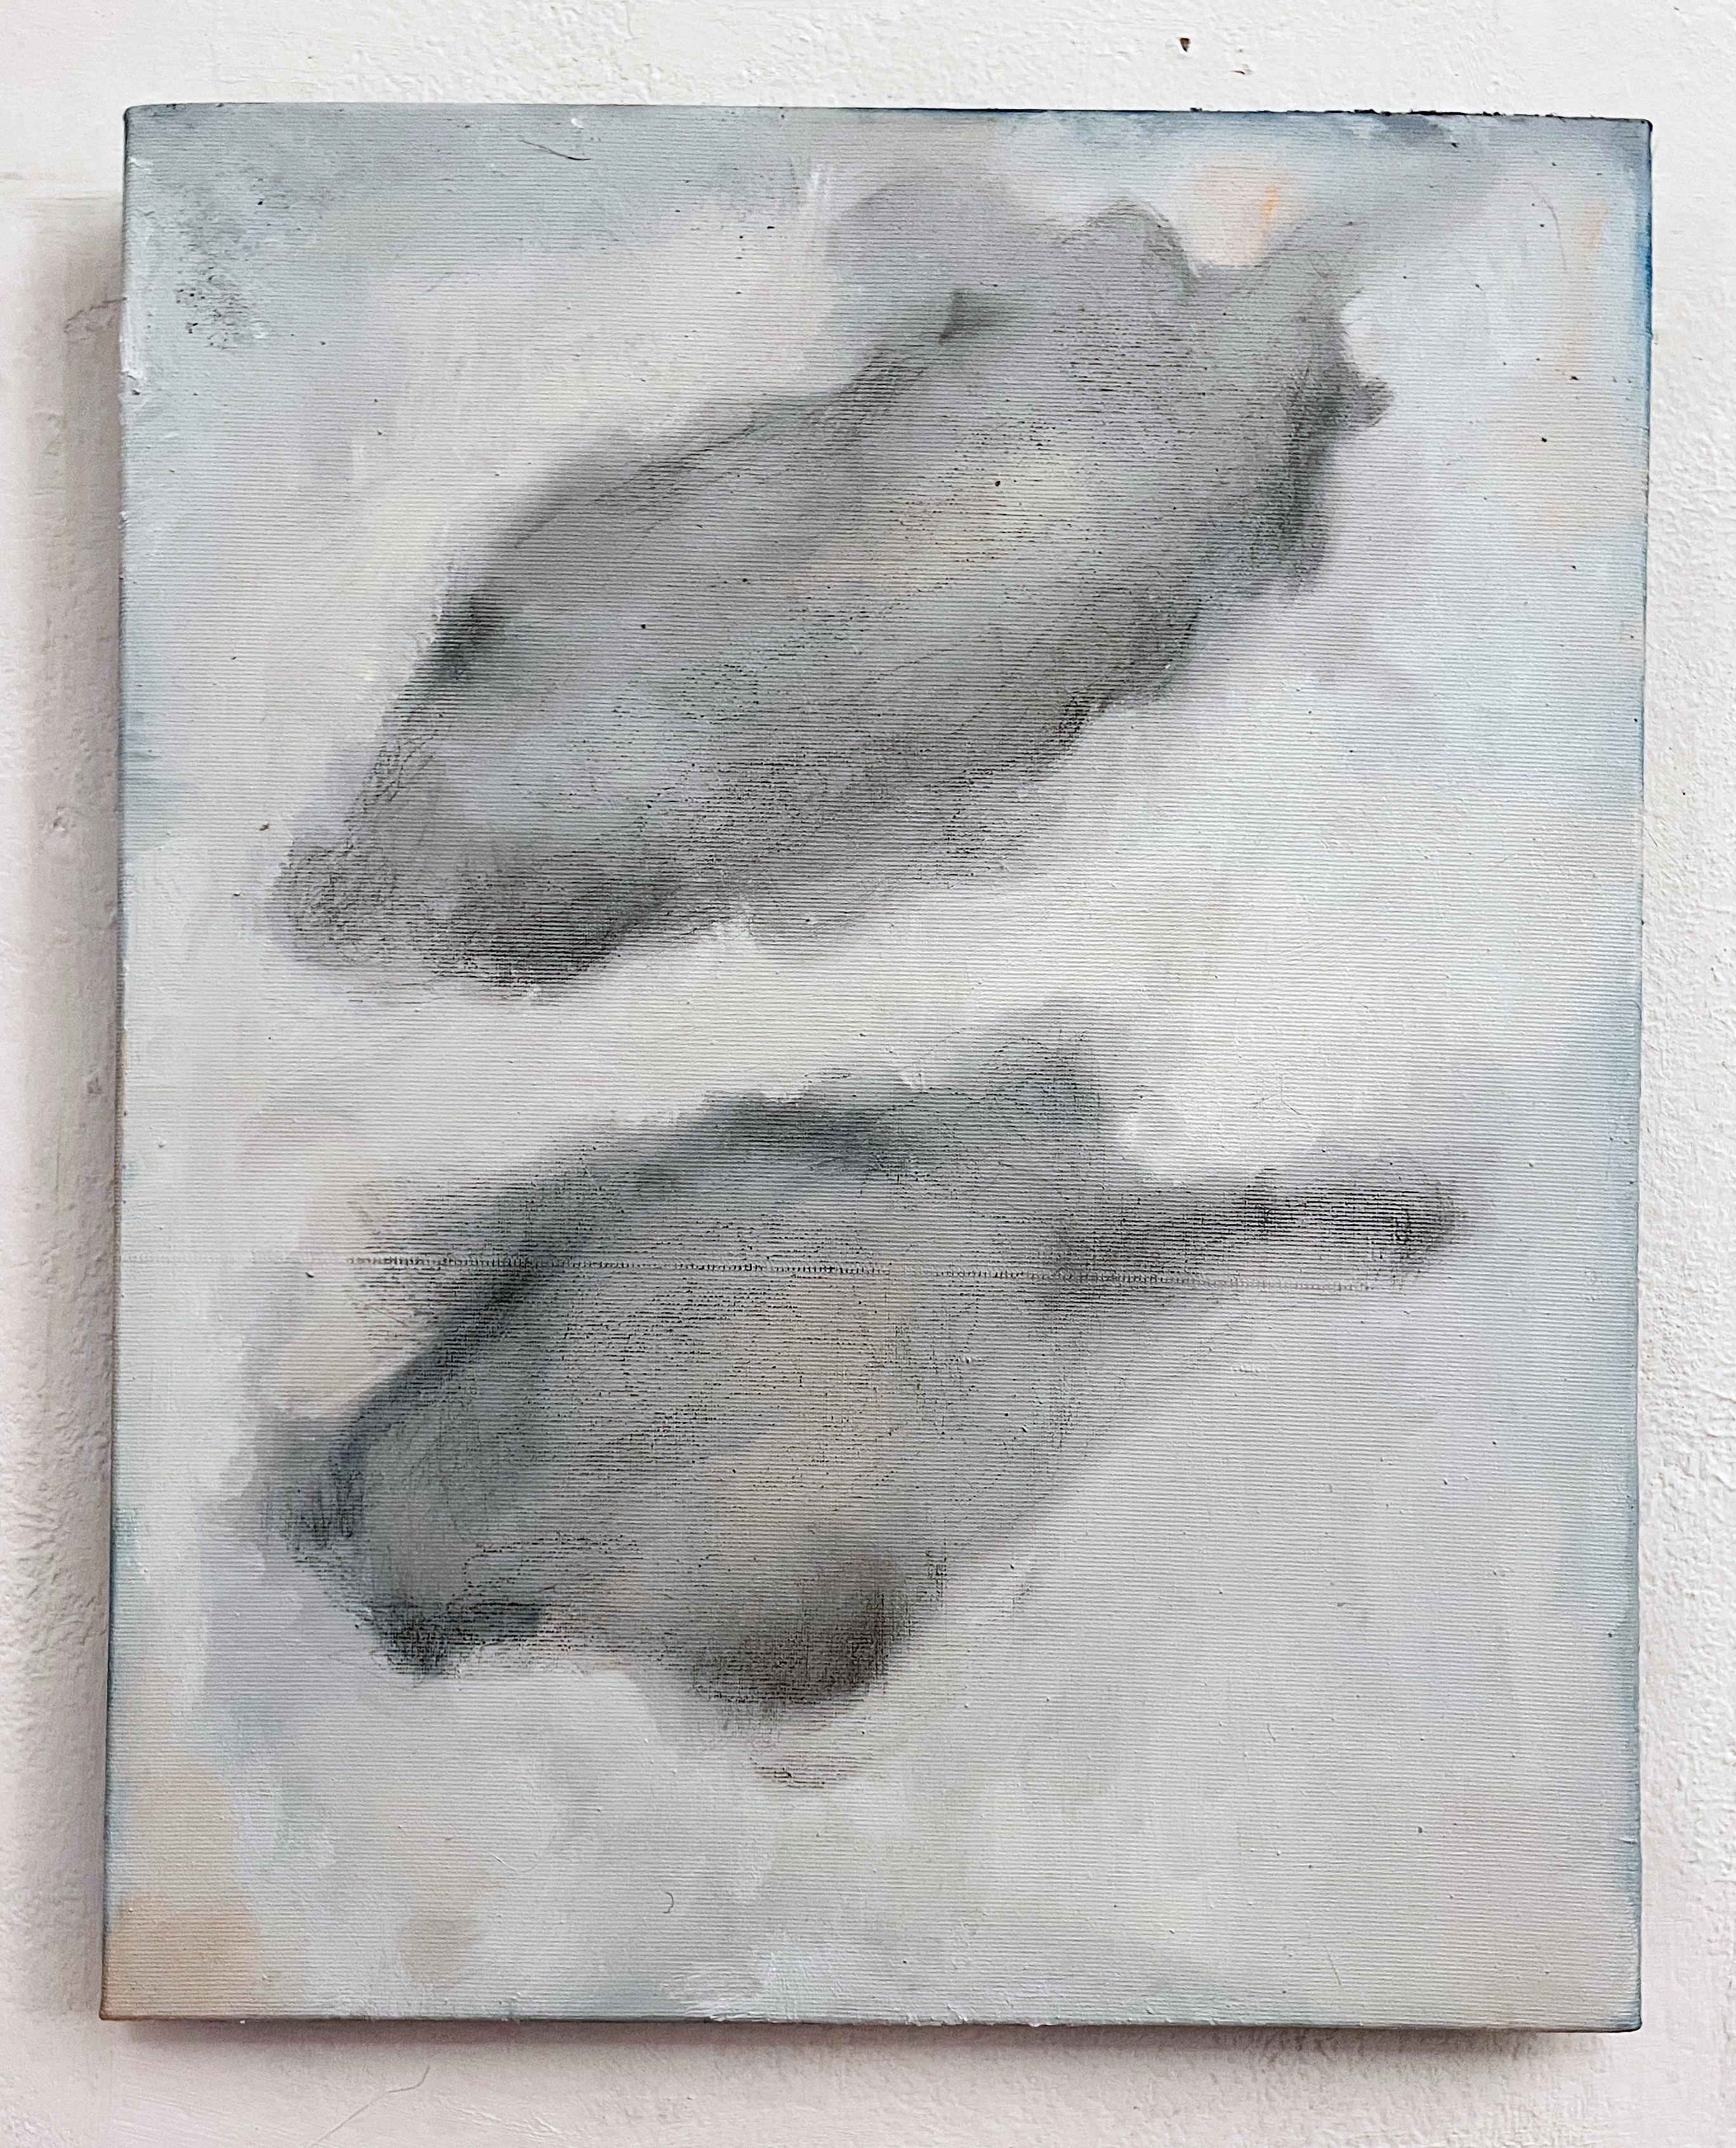 Wolken
Öl auf Leinwand 
50x40 cm

Original Ölfarbe auf Leinwand
Bereit zum Aufhängen

Marilina Marchica, Jahrgang 1984, wurde in Agrigento geboren, wo sie lebt und arbeitet. Sie schloss ihr Studium der Malerei an der Akademie der Schönen Künste in